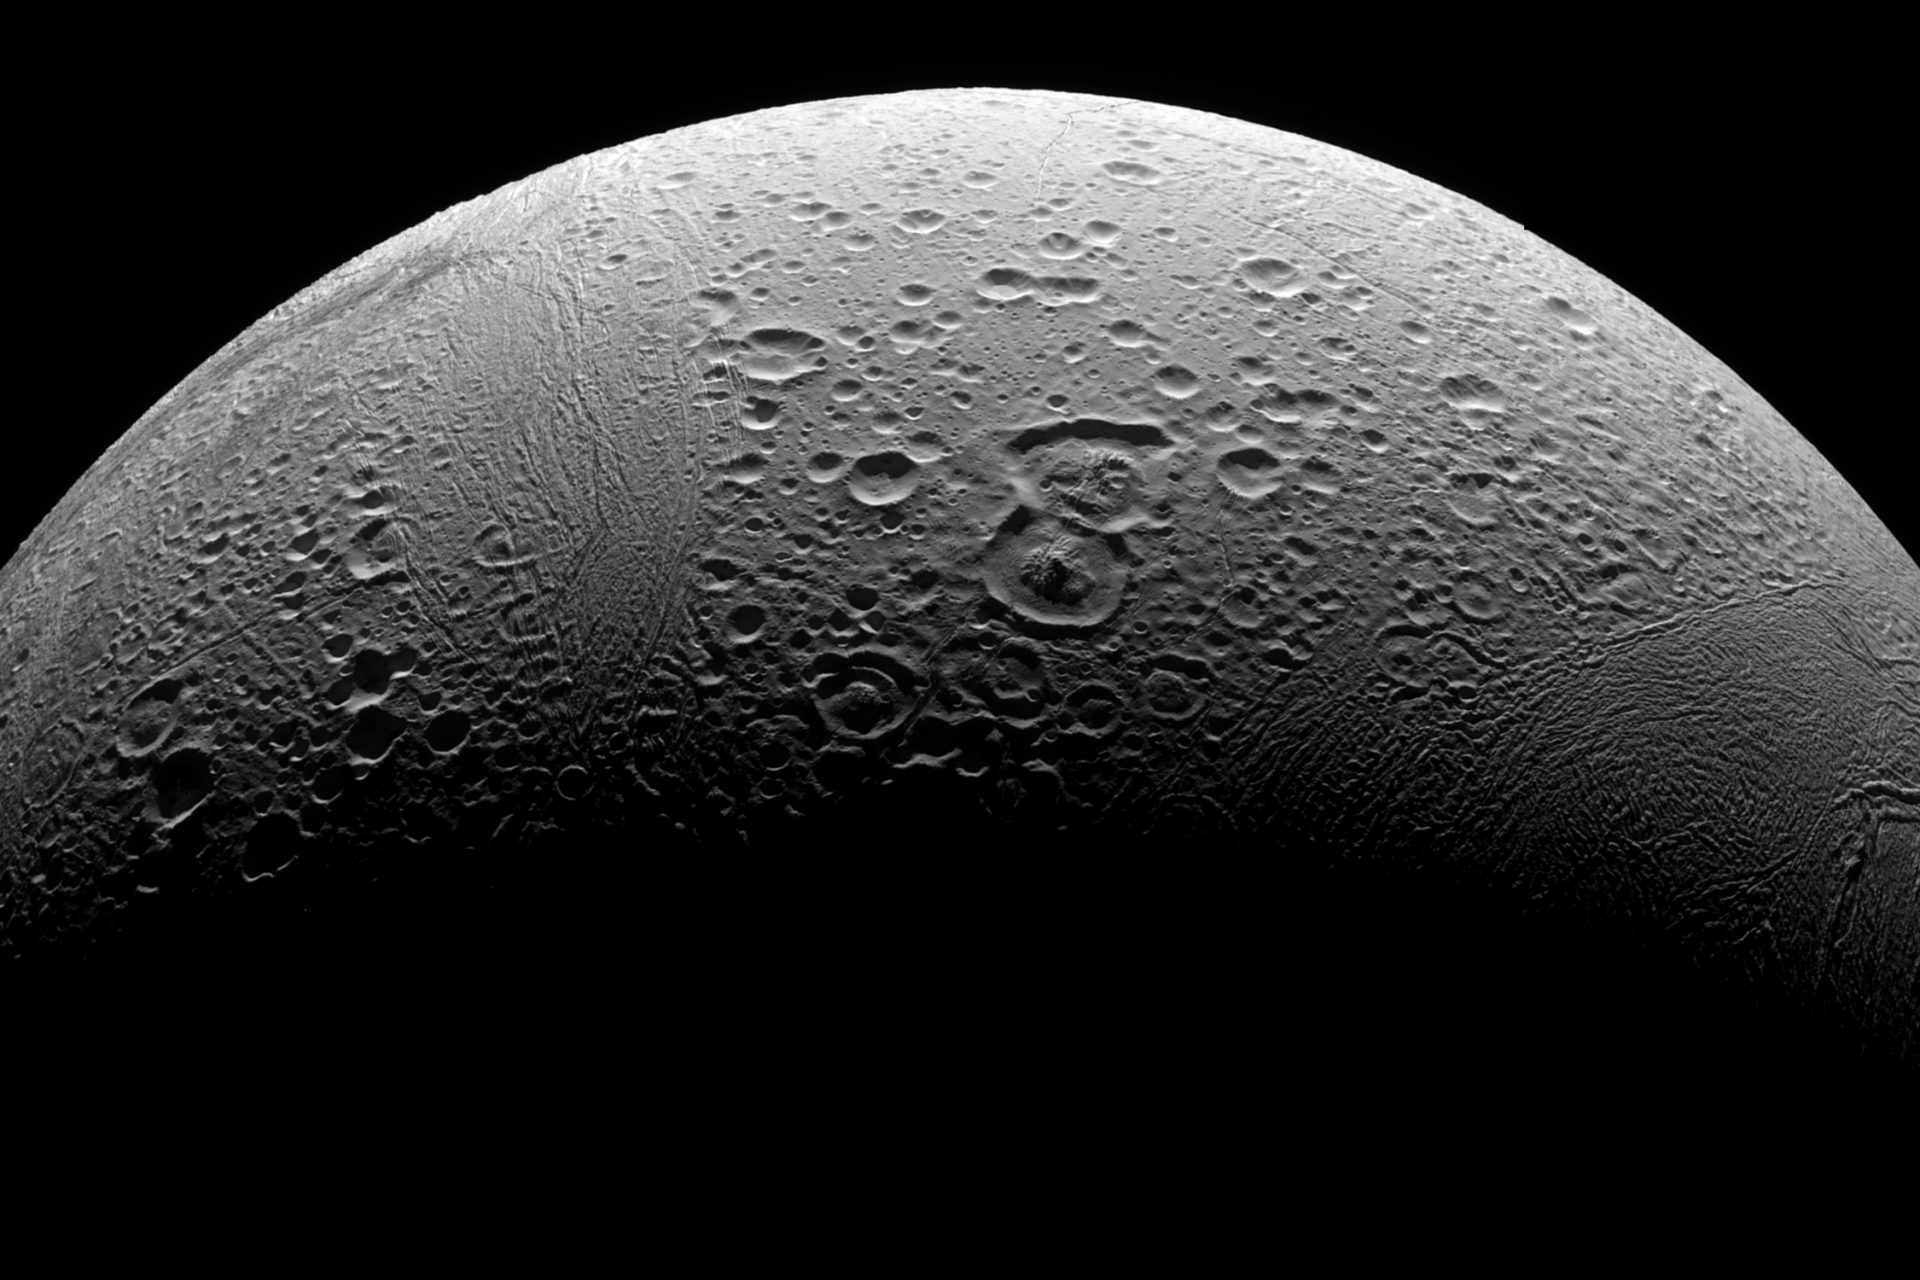 Saturn's ice moon Enceladus